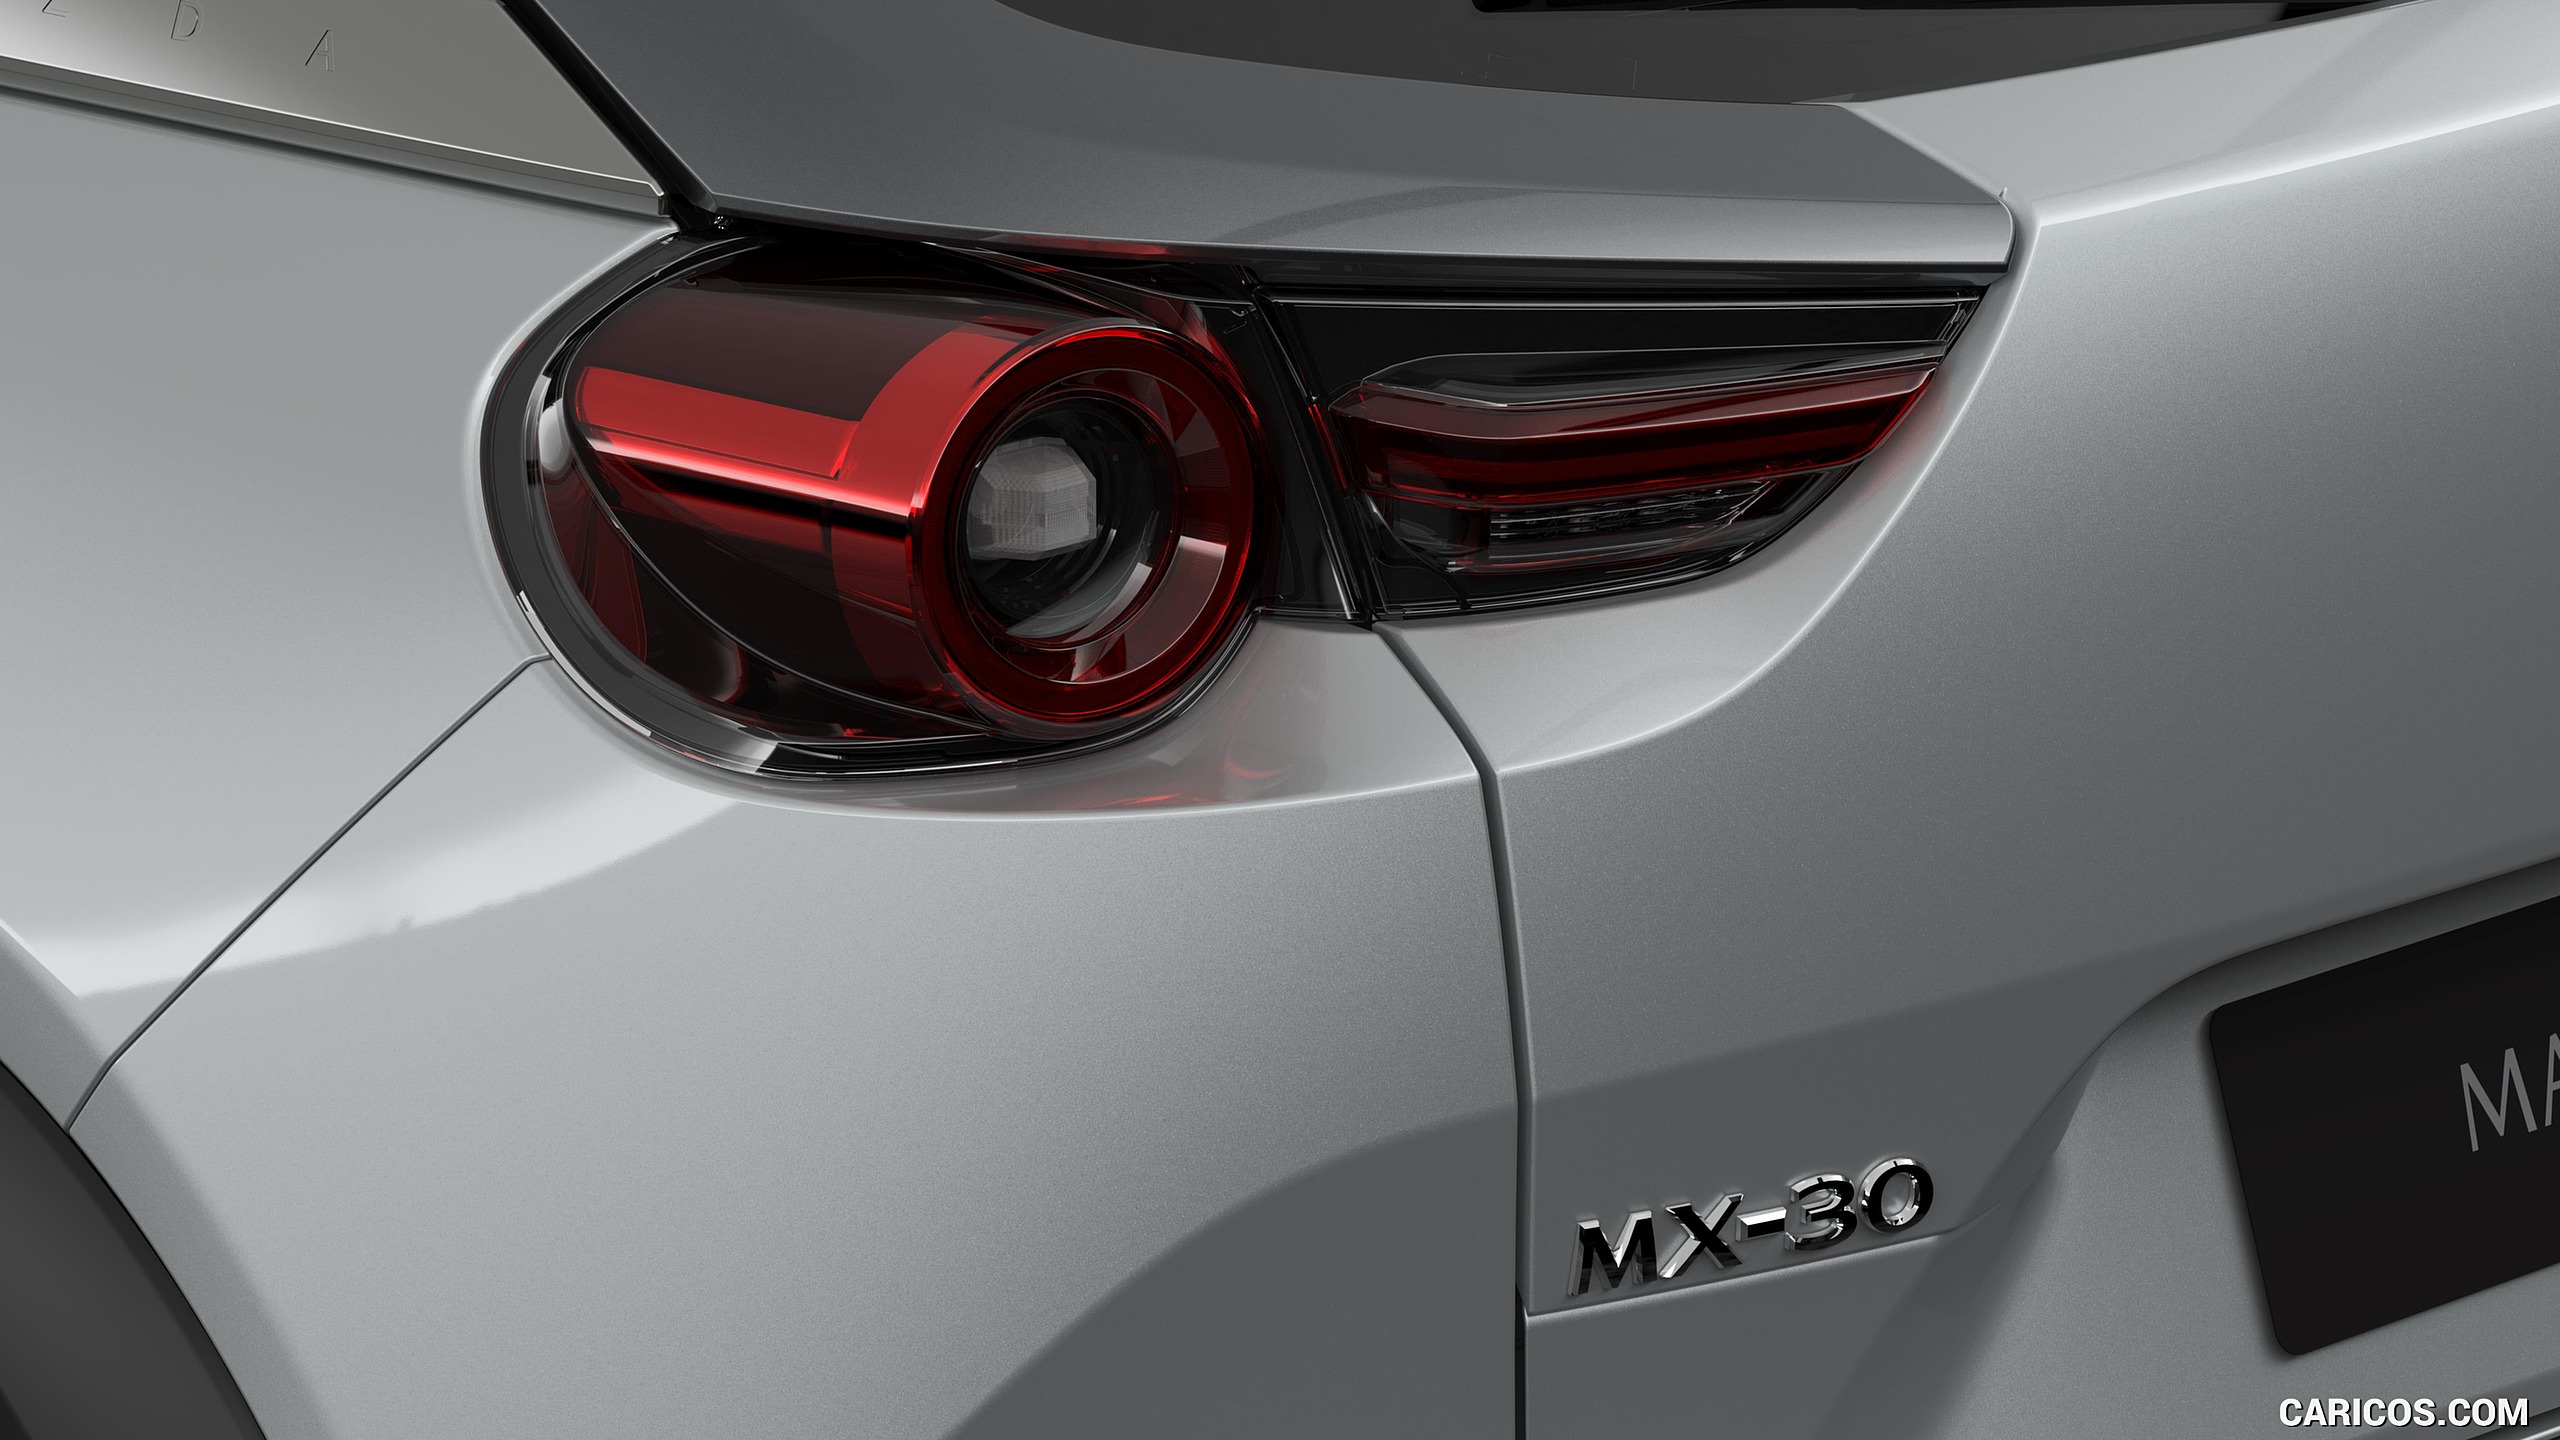 2021 Mazda MX-30 EV - Tail Light, #24 of 231